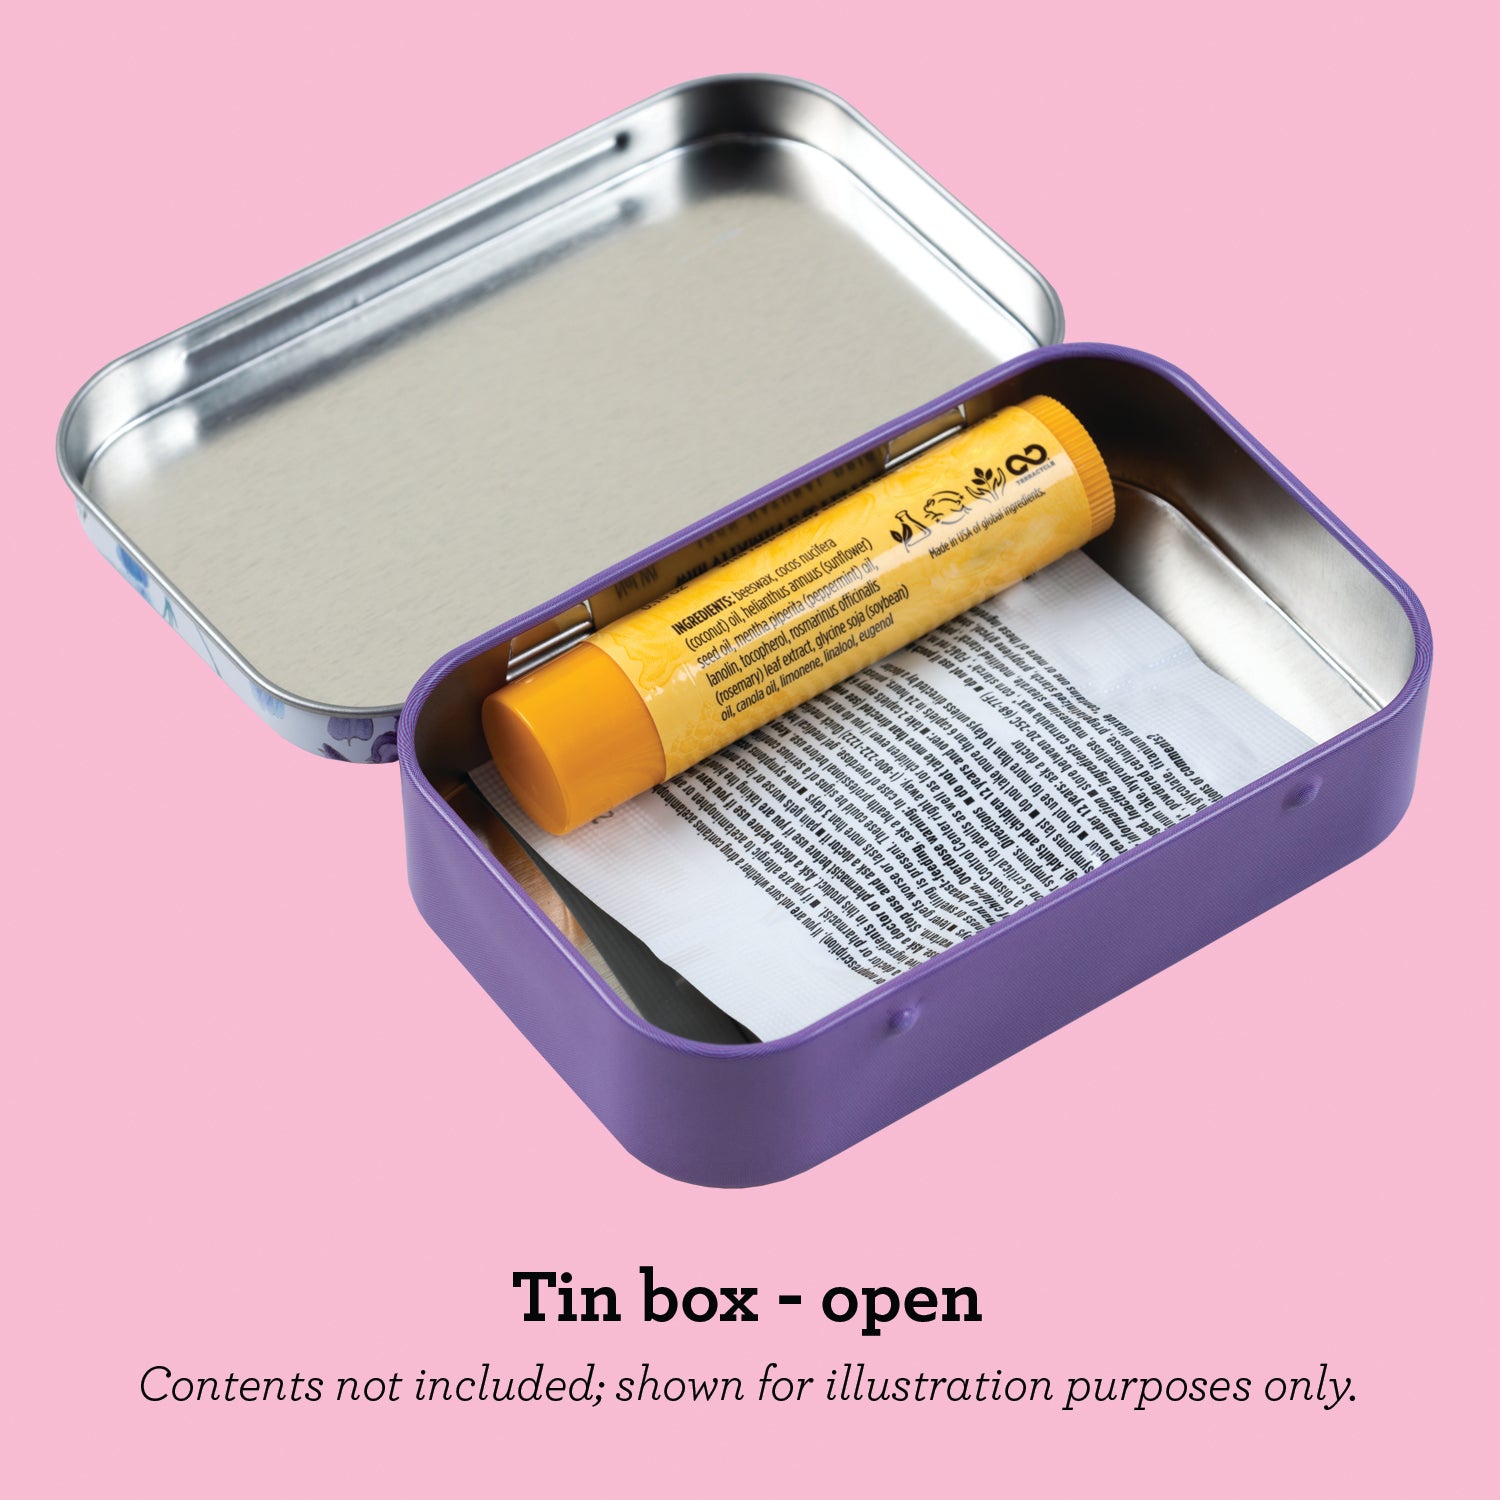 Tin Boxes Video Xxx - Keep the Fuck Out Stash Tin - purse-size tin box â€“ Bad Grandma Designs